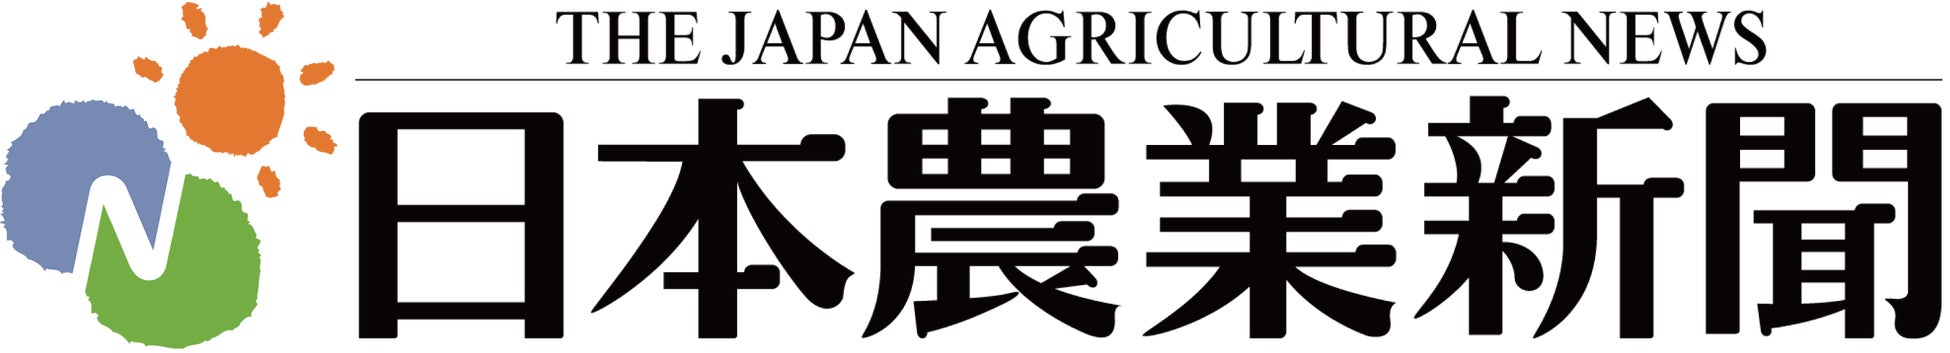 【日本農業新聞電子版】紙面ビューアー閲覧期間が30日分に大幅拡大のサブ画像2